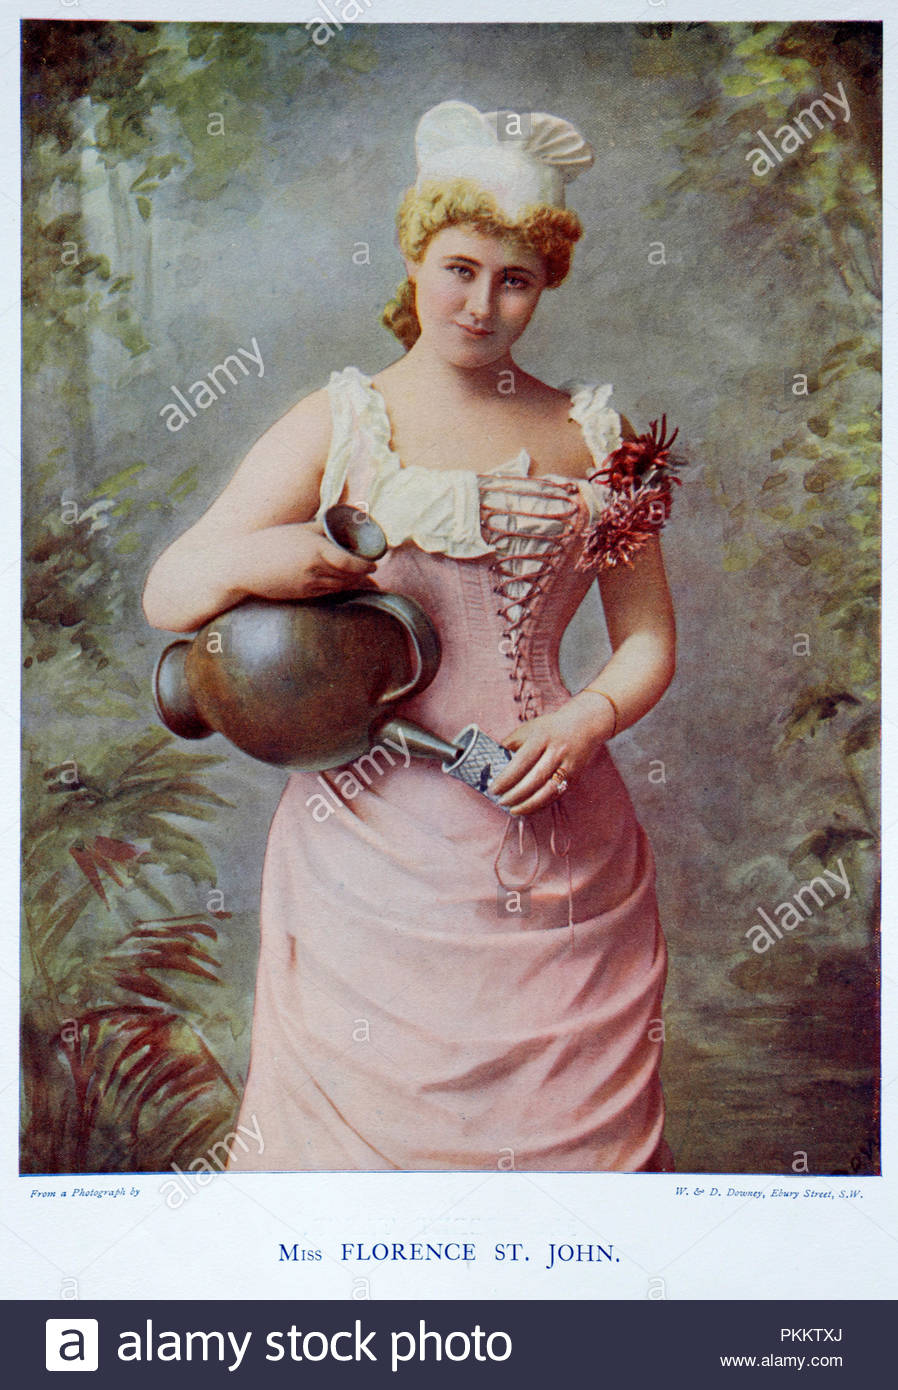 Florence St. John portrait, 1855 - 1912, était une chanteuse et actrice de la fin des époques victorienne et édouardienne célèbre pour ses rôles dans l'opérette, burlesque musical, music-hall, l'opéra et, plus tard, la bande dessinée joue. Illustration couleur à partir de 1899. Banque D'Images